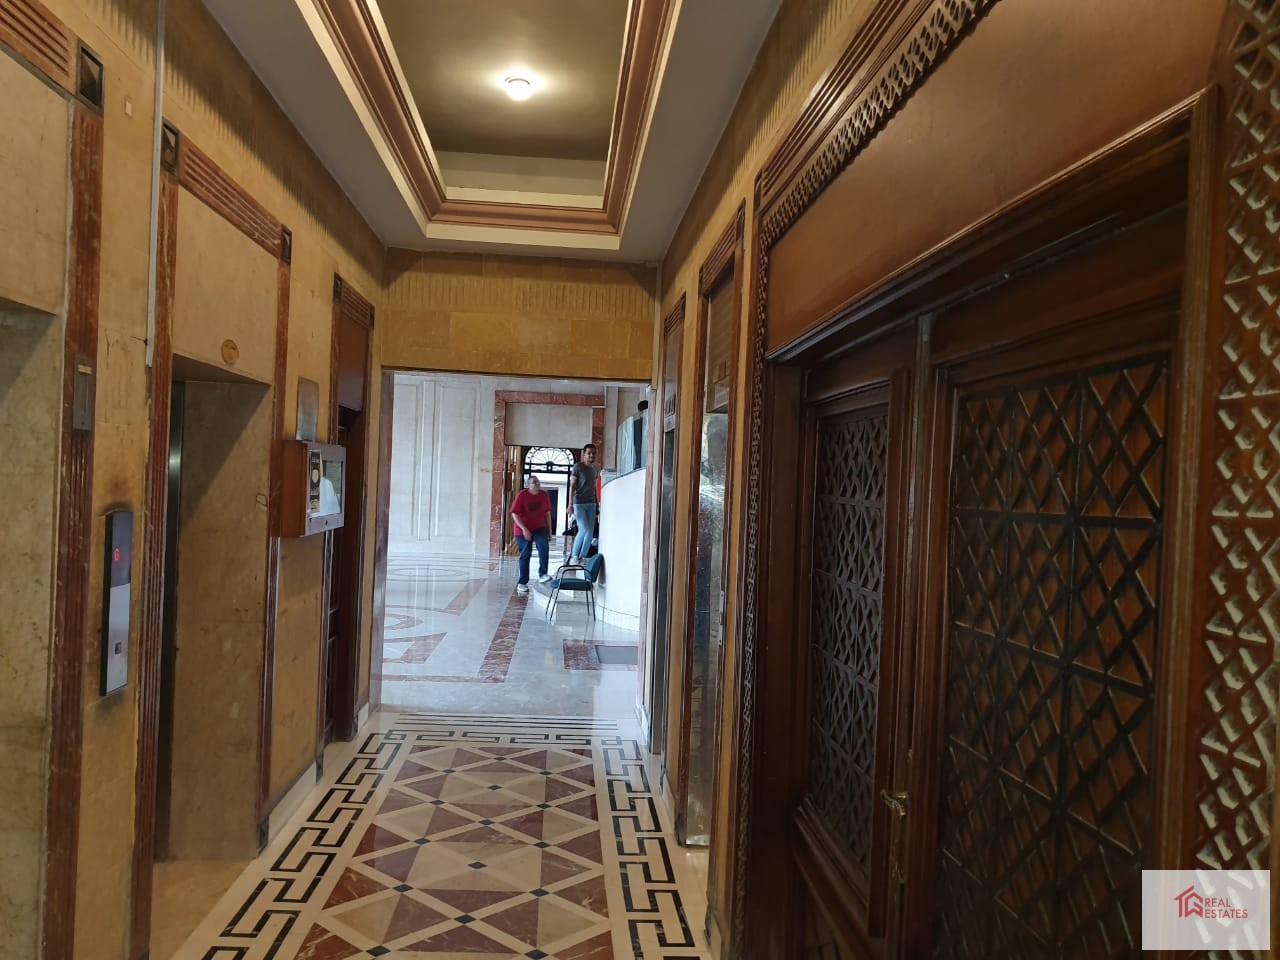 埃及吉萨 Agouza 出租公寓面积：472 m 它由 4 间房间组成，其中 2 间带浴室 出租